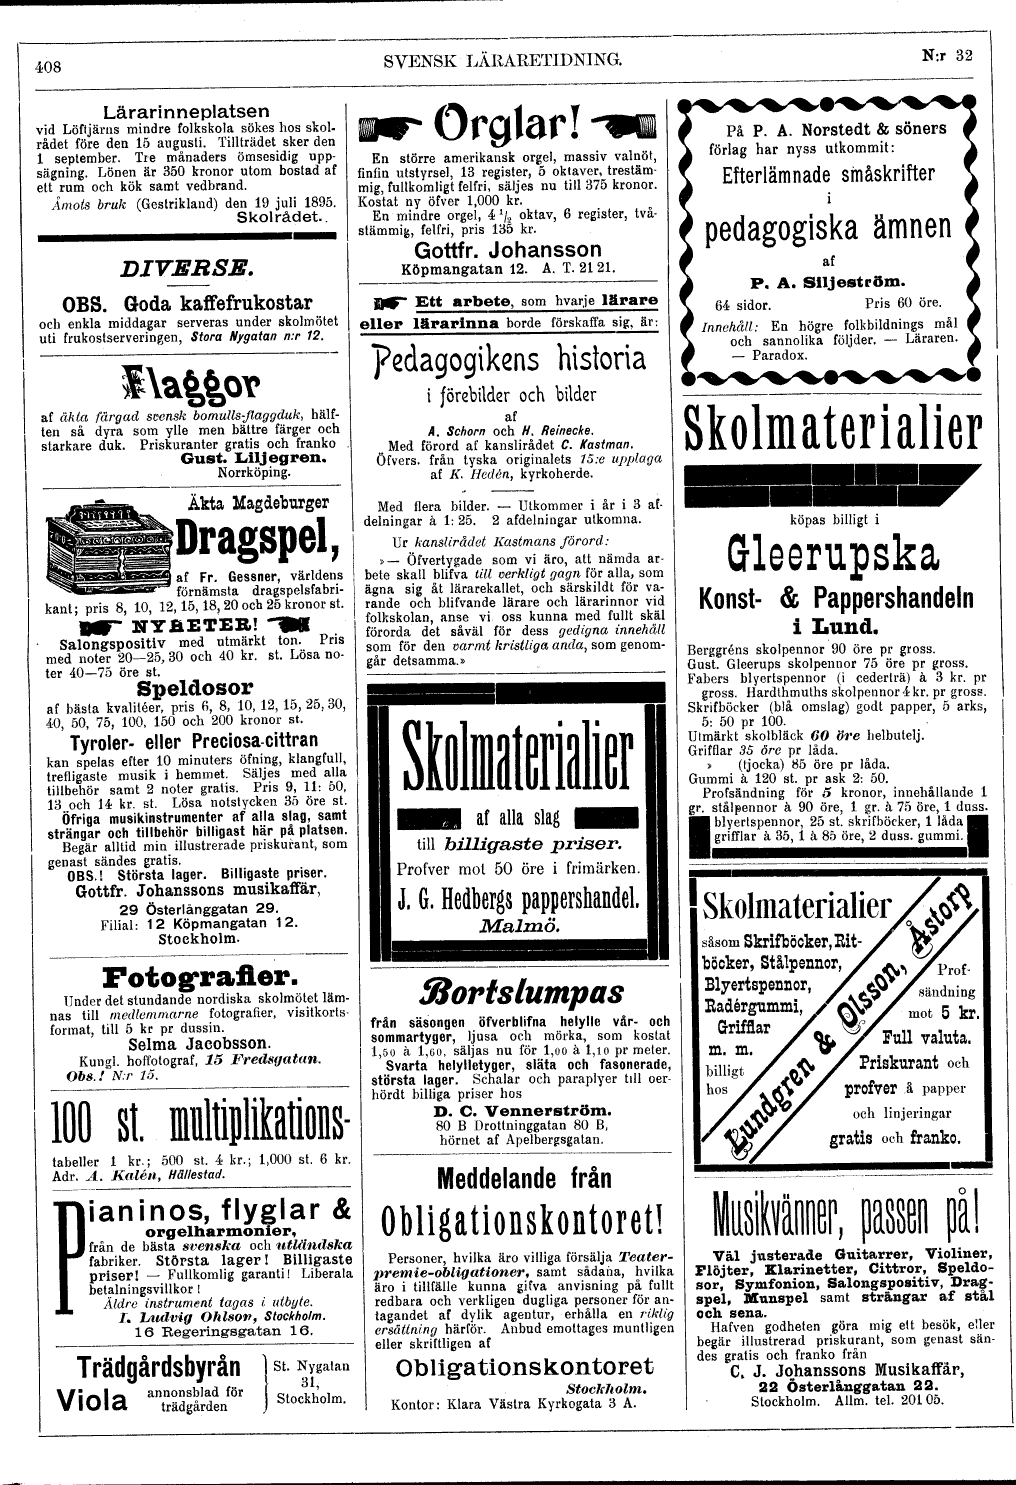 408 (Svensk Läraretidning / 14:e årg. 1895)